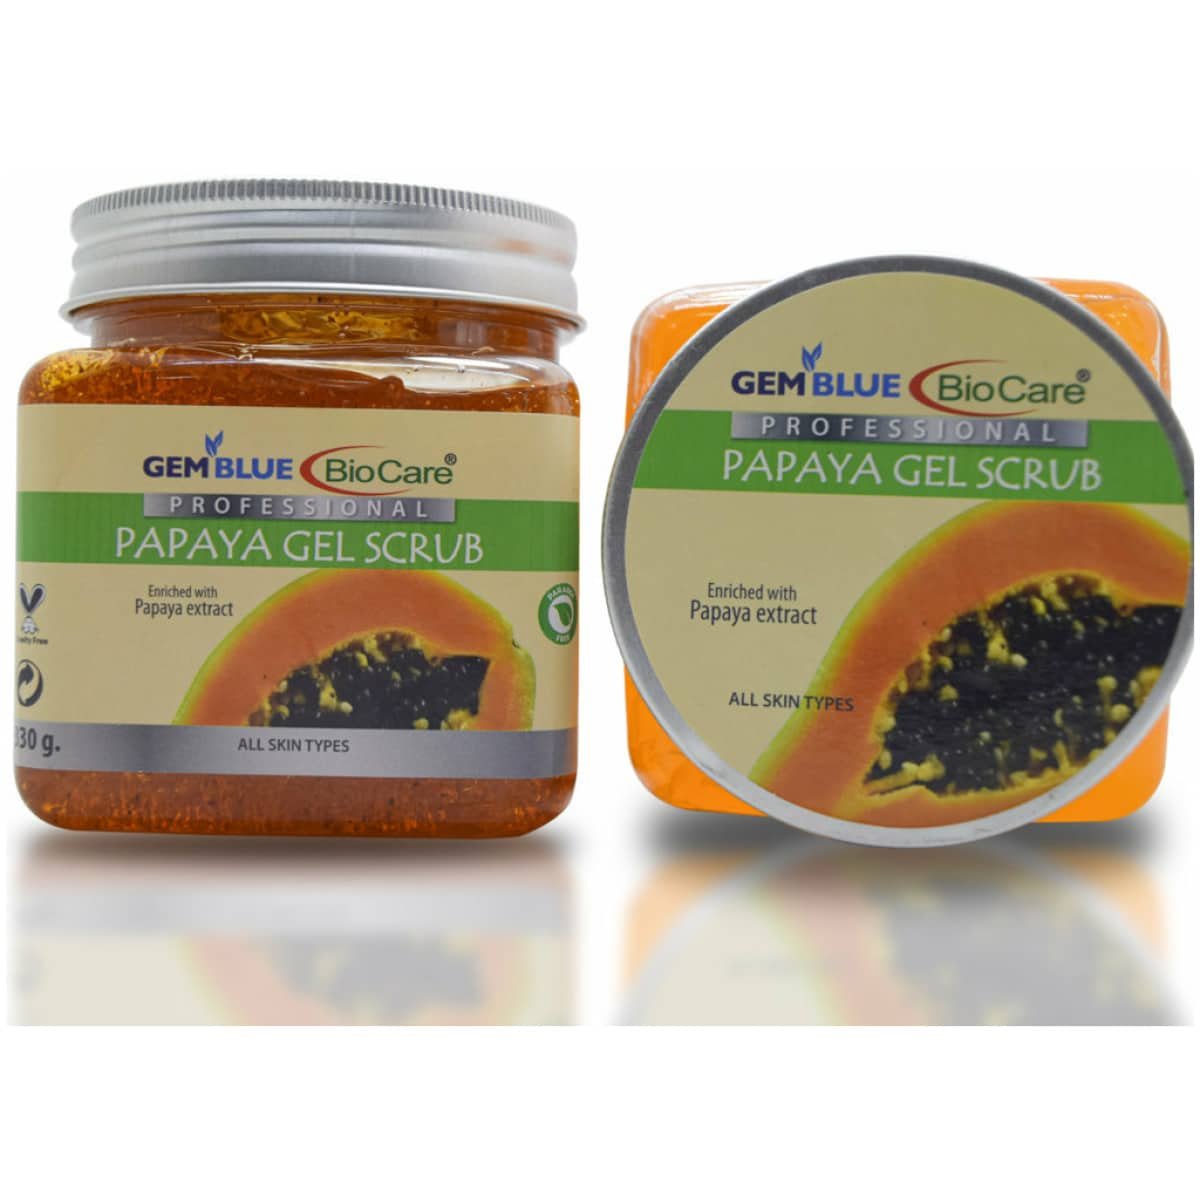 Gemblue Biocare Professional Papaya Gel Scrub 330ml